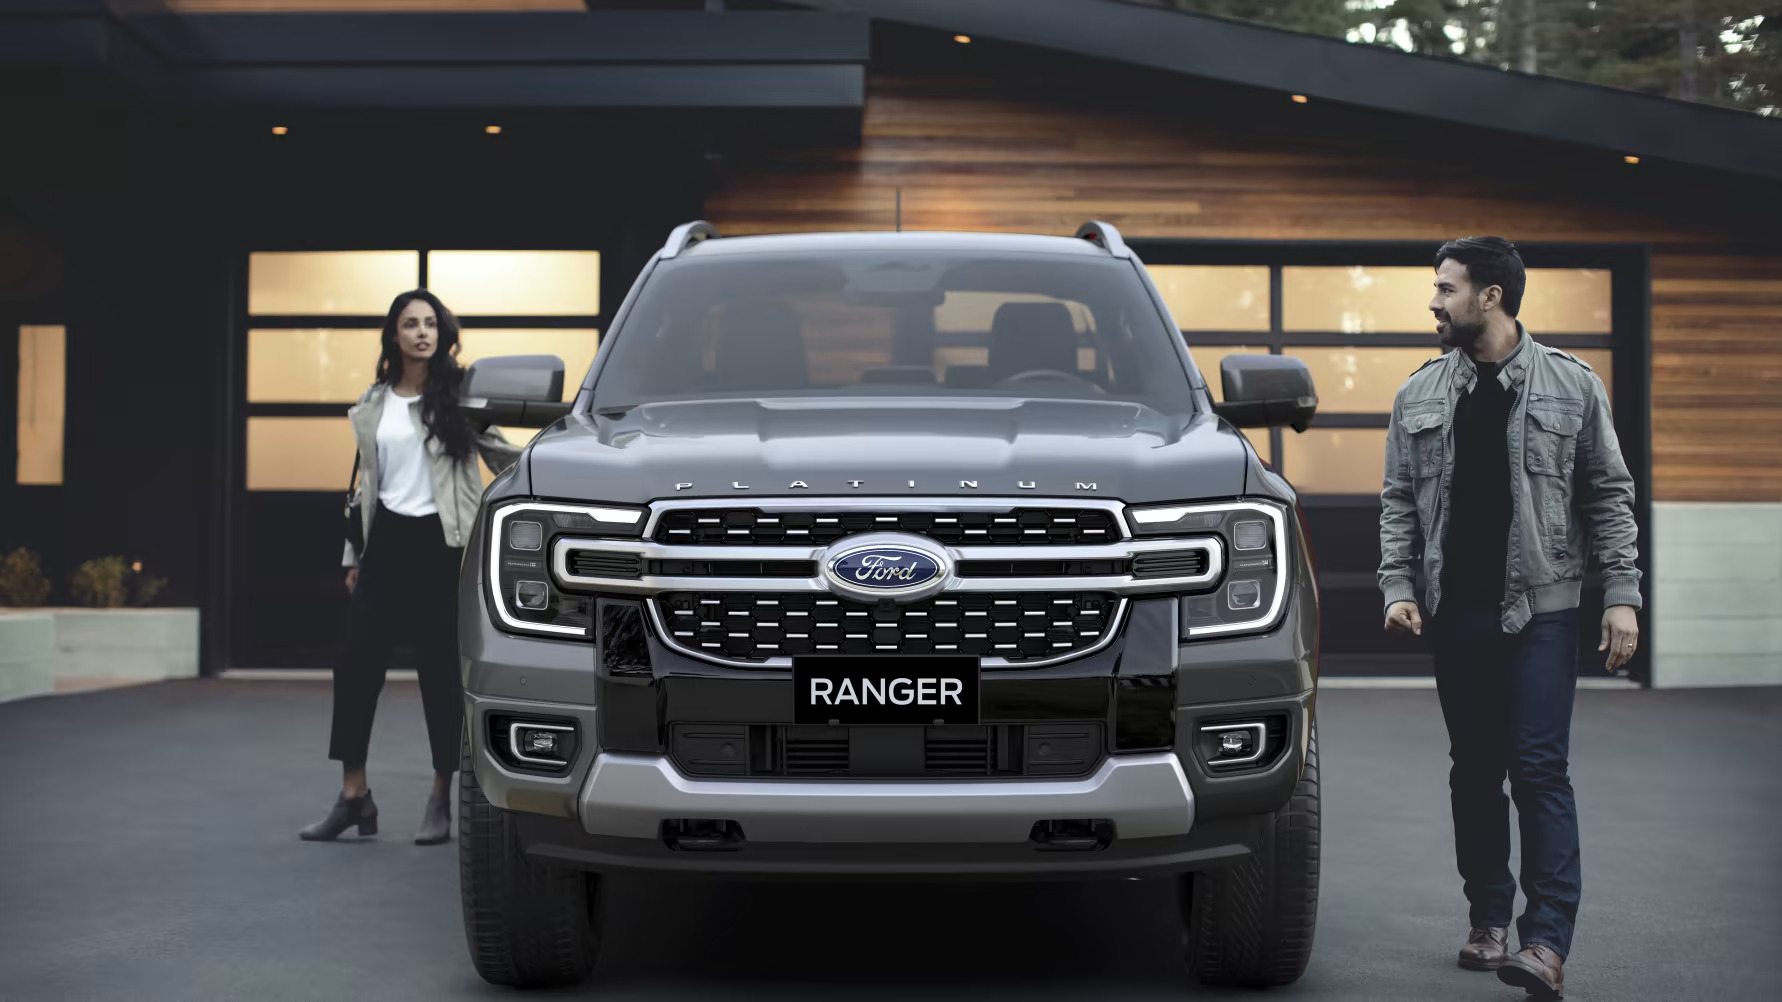 Ford Ranger, cel mai bine vândut pick-up din Europa, devine disponibil în echipare Platinum și ridică nivelul de lux la un nou standard